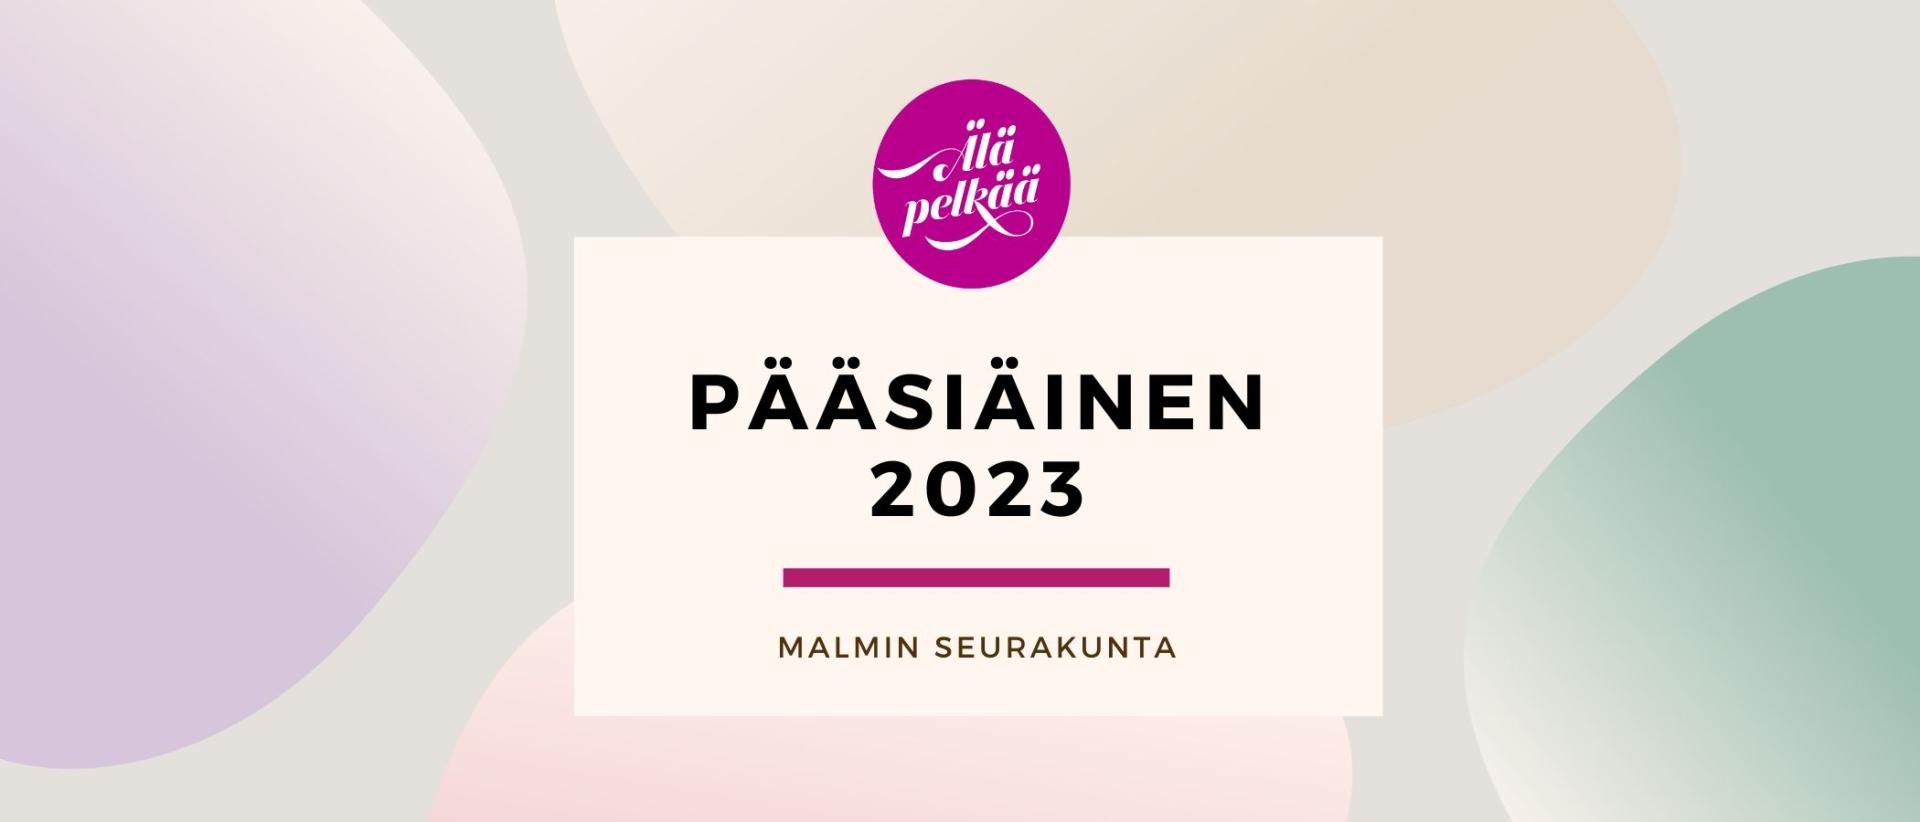 Pääsiäinen Malmin seurakunnassa 2023 Älä pelkää